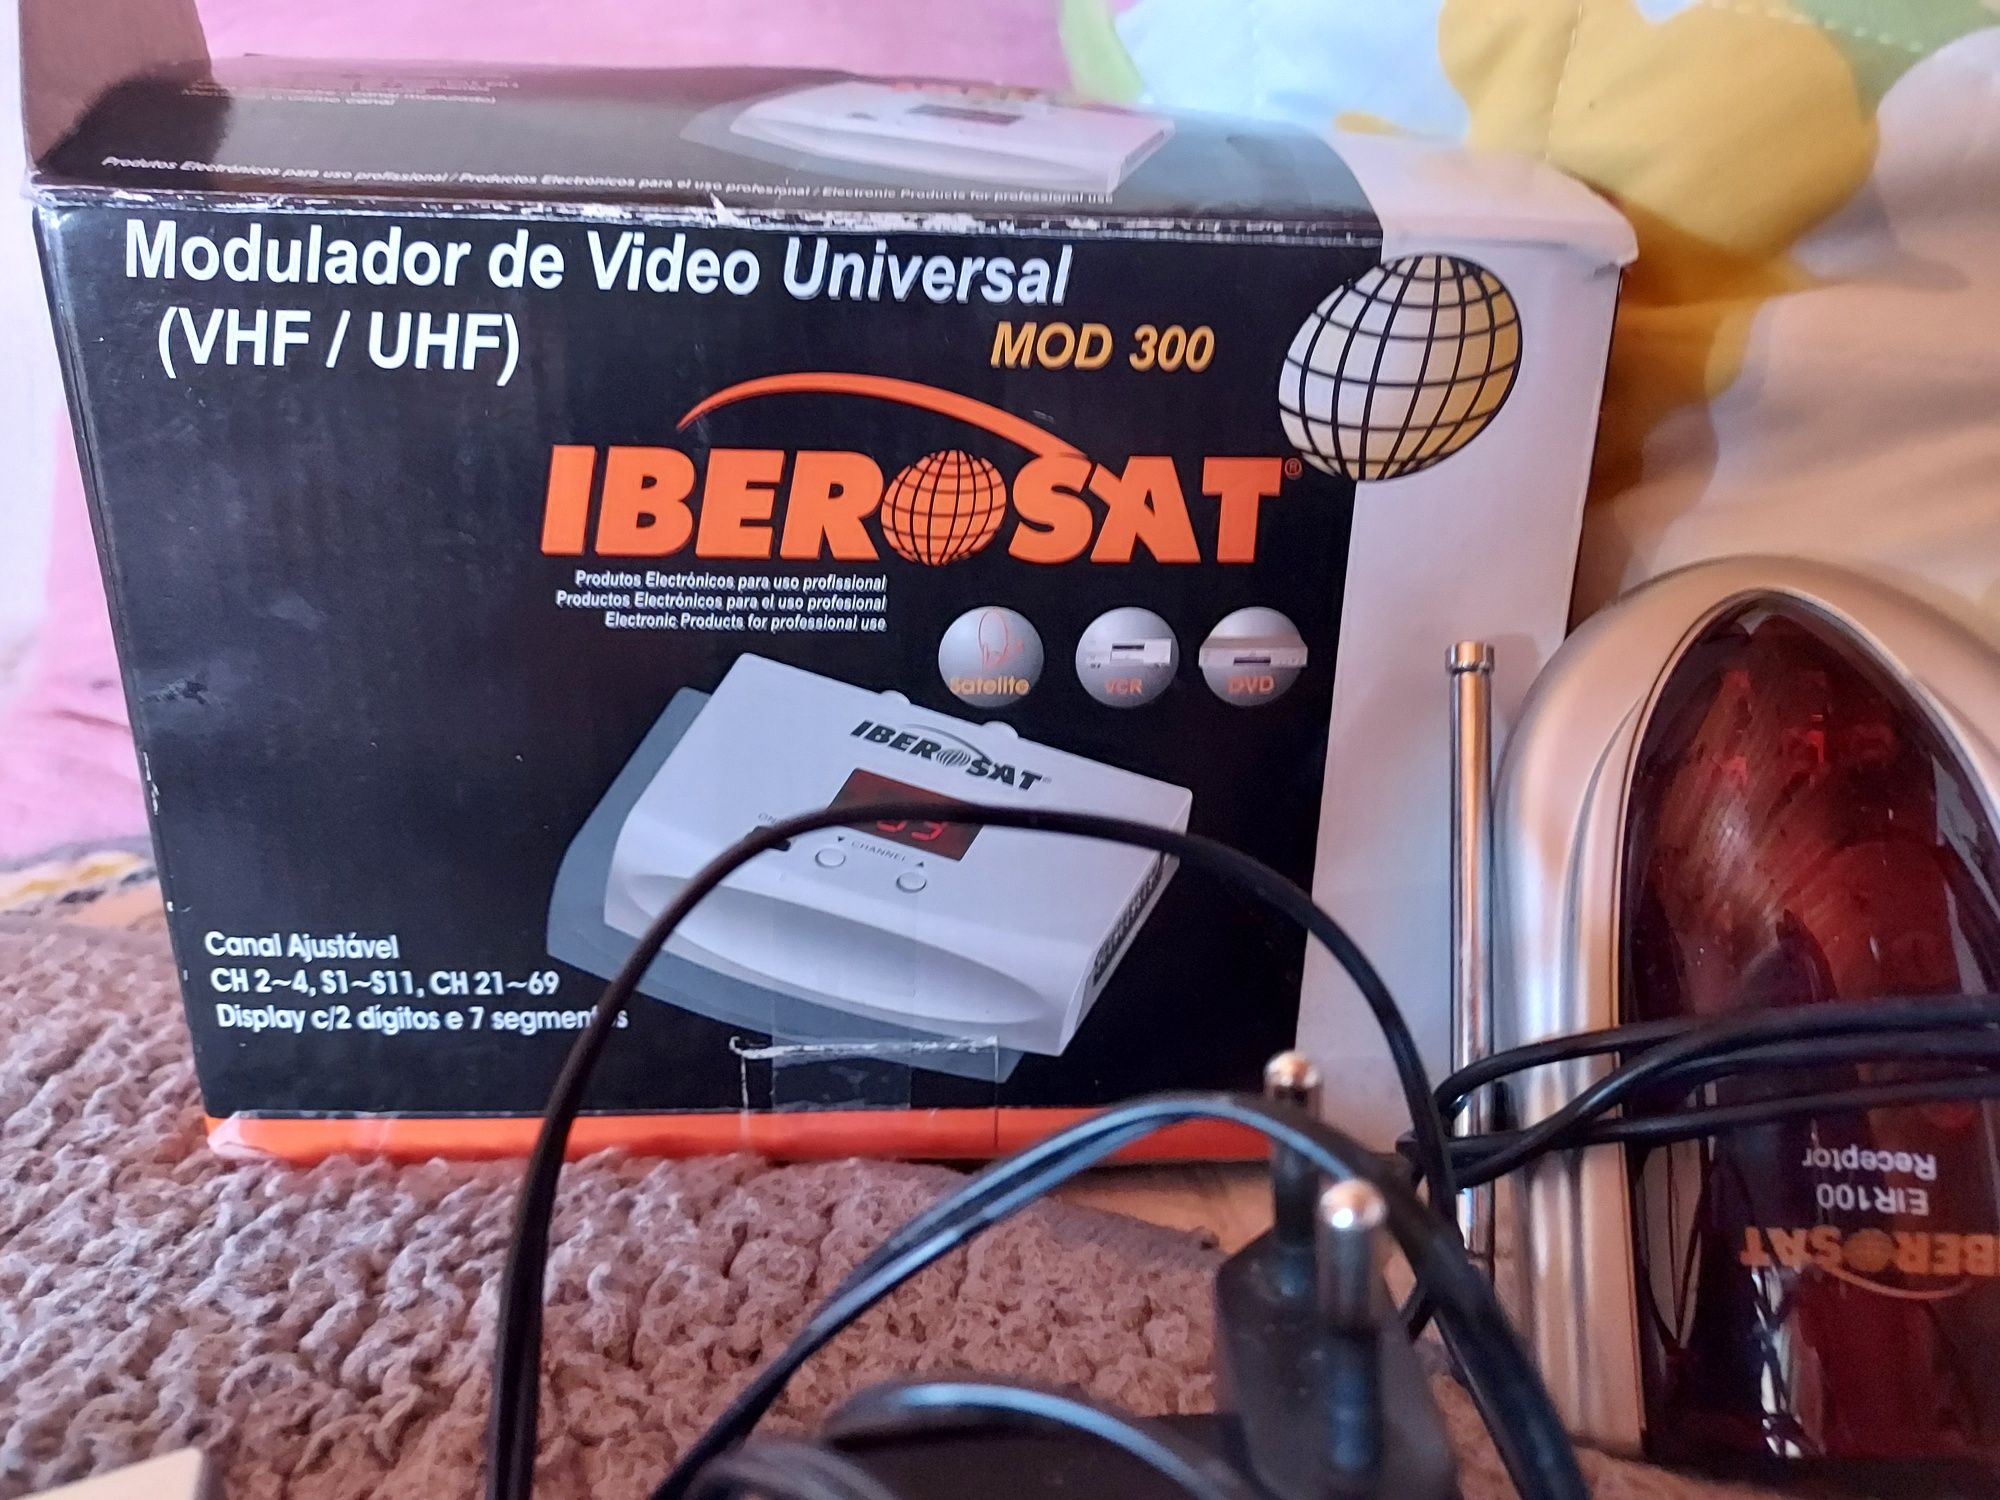 Vendo Modulador de Video Universal mod300 Iberosat e raspetivas antena